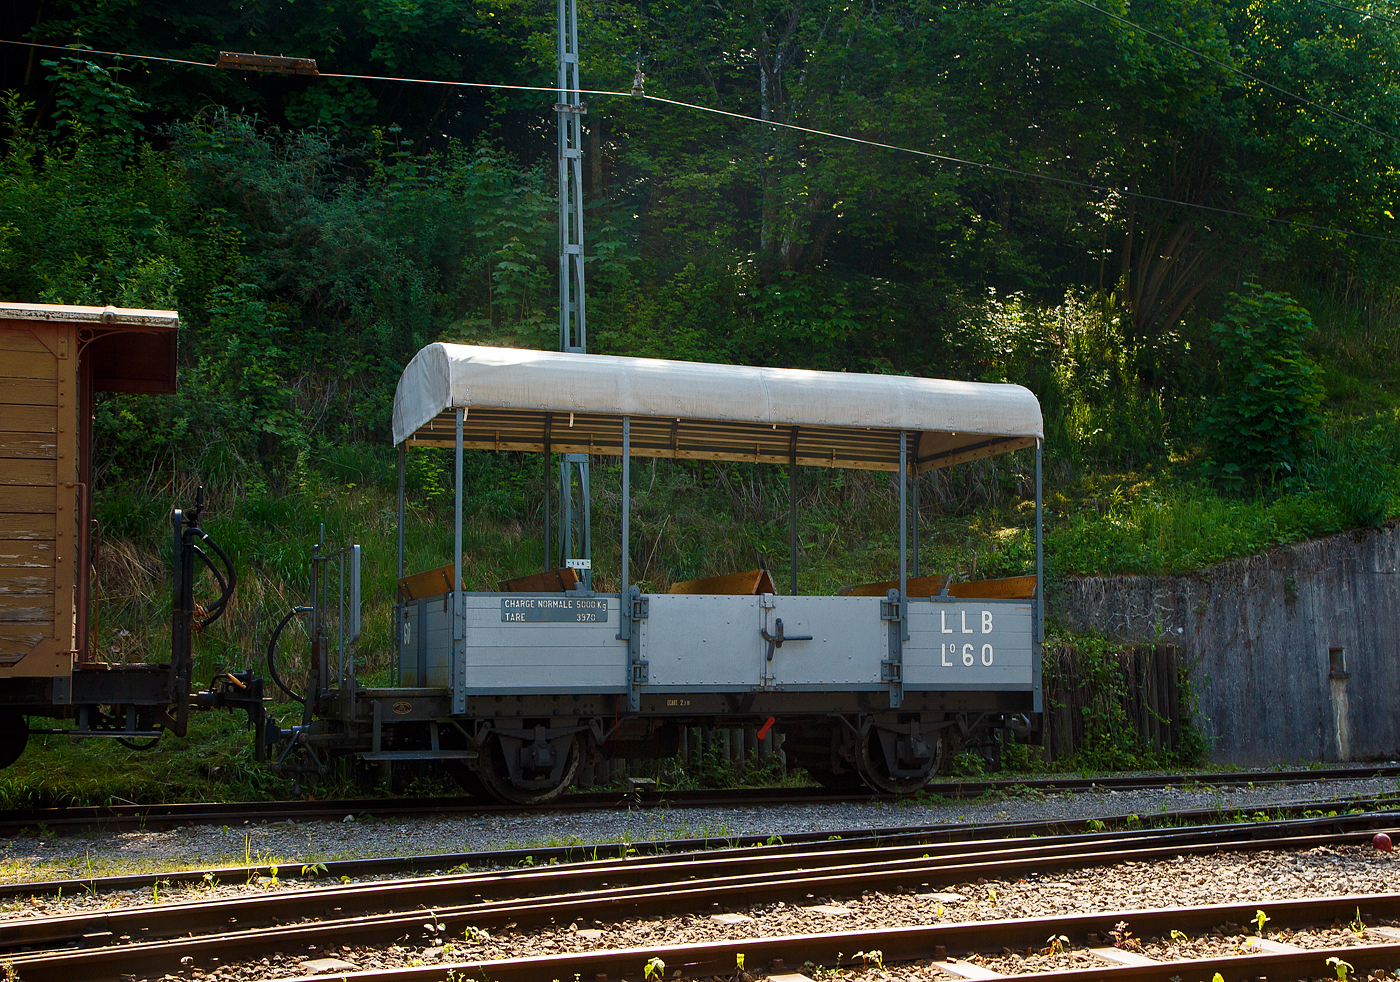 Der „kleine“ zweiachsige Behelfs-Personenwagen (Sommerwagen) ex LLB L° 60 der Museumsbahn Blonay–Chamby am 27.05.2023 auf dem Museums-Areal der (BC) in Chaulin. Eigentlich ein Güterwagen (Flachwagen) mit aufgesetzten Sitzbänken.

Der Wagen wurde 1915 von SWS Schlieren (Schweizerische Wagons- und Aufzügefabrik AG) für die LLB (Leuk-Leukerbad-Bahn, französisch Chemin de fer Loèche-Loèche-les-Bains) gebaut und geliefert. Bereits 1967 ging er an die Museumsbahn Blonay–Chamby und wurde 2015 von der BC umfassend restauriert. 

TECHNISCHE DATEN:
Spurweite: 1.000 mm (Meterspur)
Achsanzahl: 2
Länge über Puffer: 5.800 mm
Achsabstand: 2.700 mm
Breite: 2.000 mm
Laufraddurchmesser: 660 mm (neu)
Teilkreis-Ø Bremszahnrad: 496,8 mm (Zahnstangensystem Abt)
Eigengewicht: 3.970 kg
Nutzlast: 5.000 kg